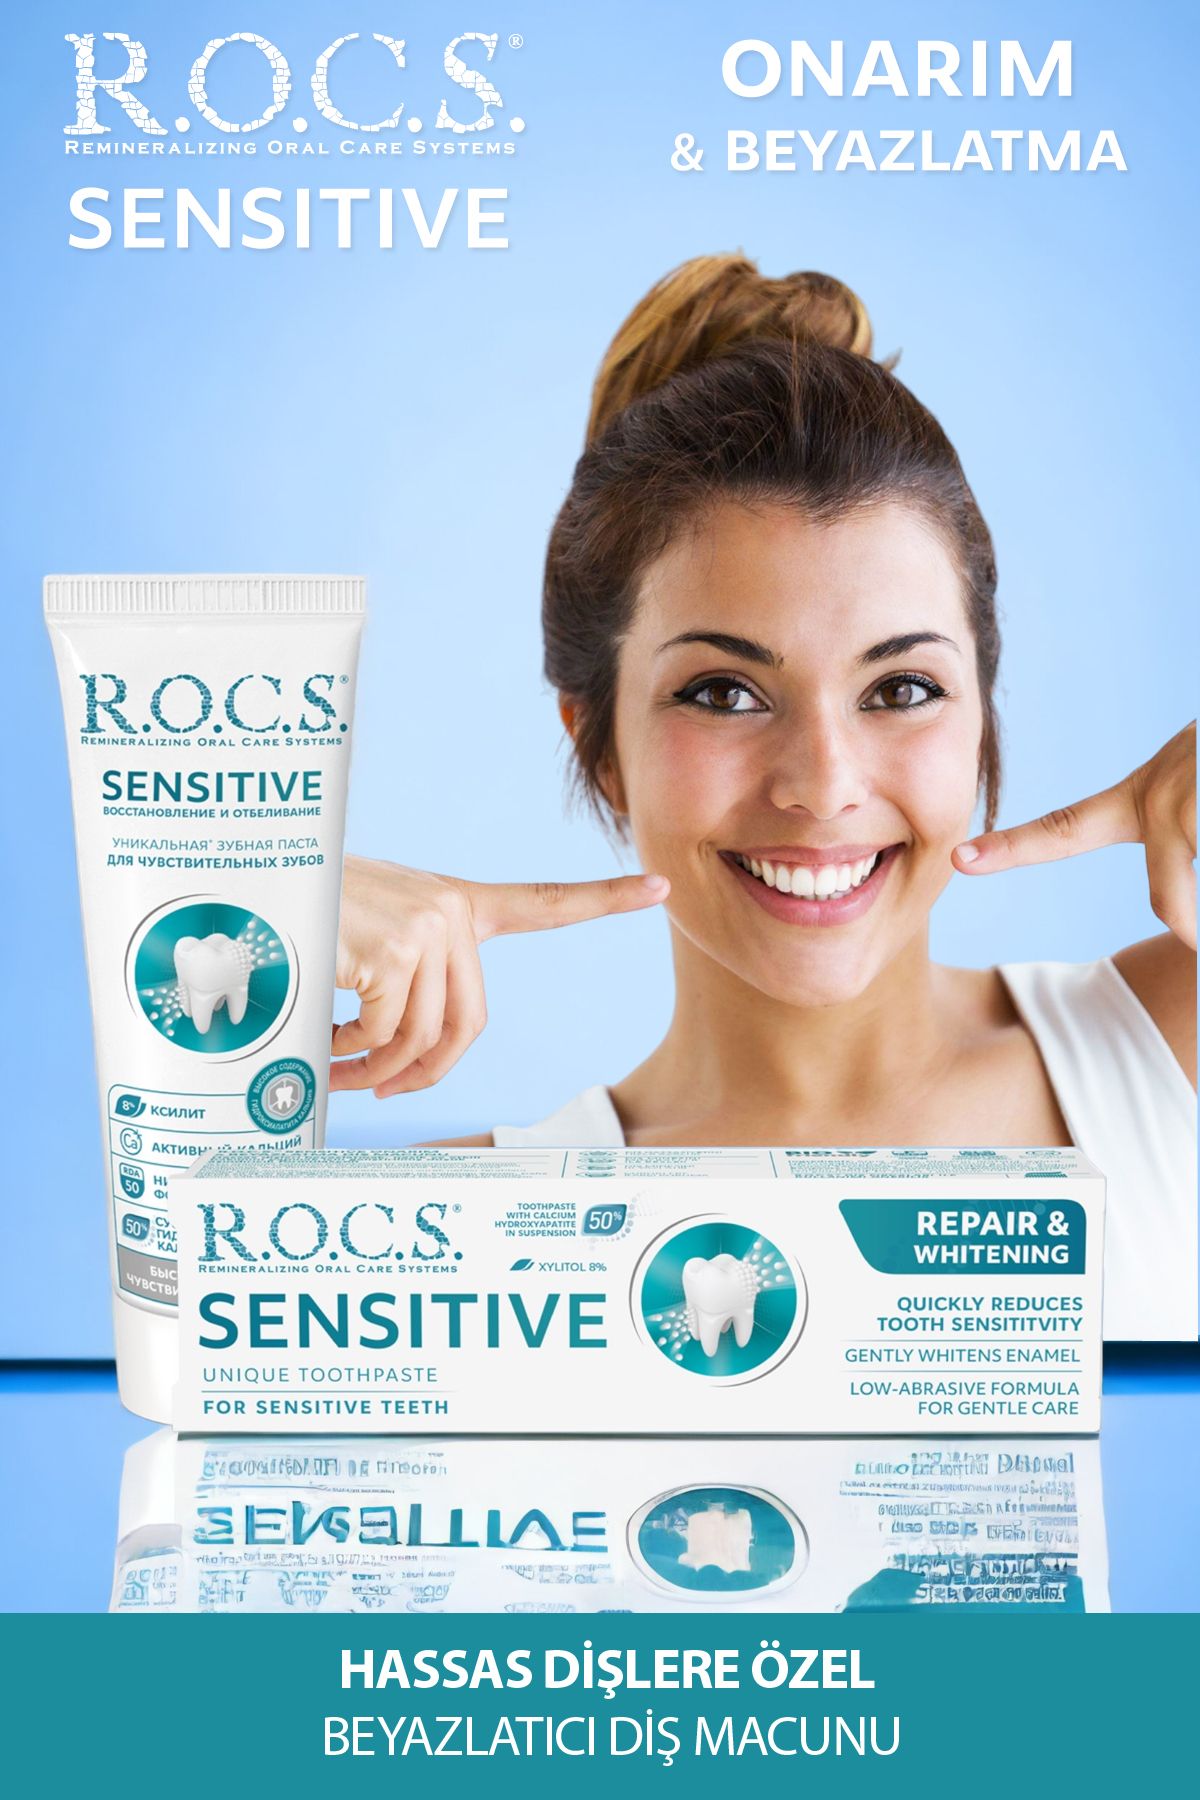 R.O.C.S. Rocs Sensitive Diş Macunu Onarım Ve Beyazlatma 94g